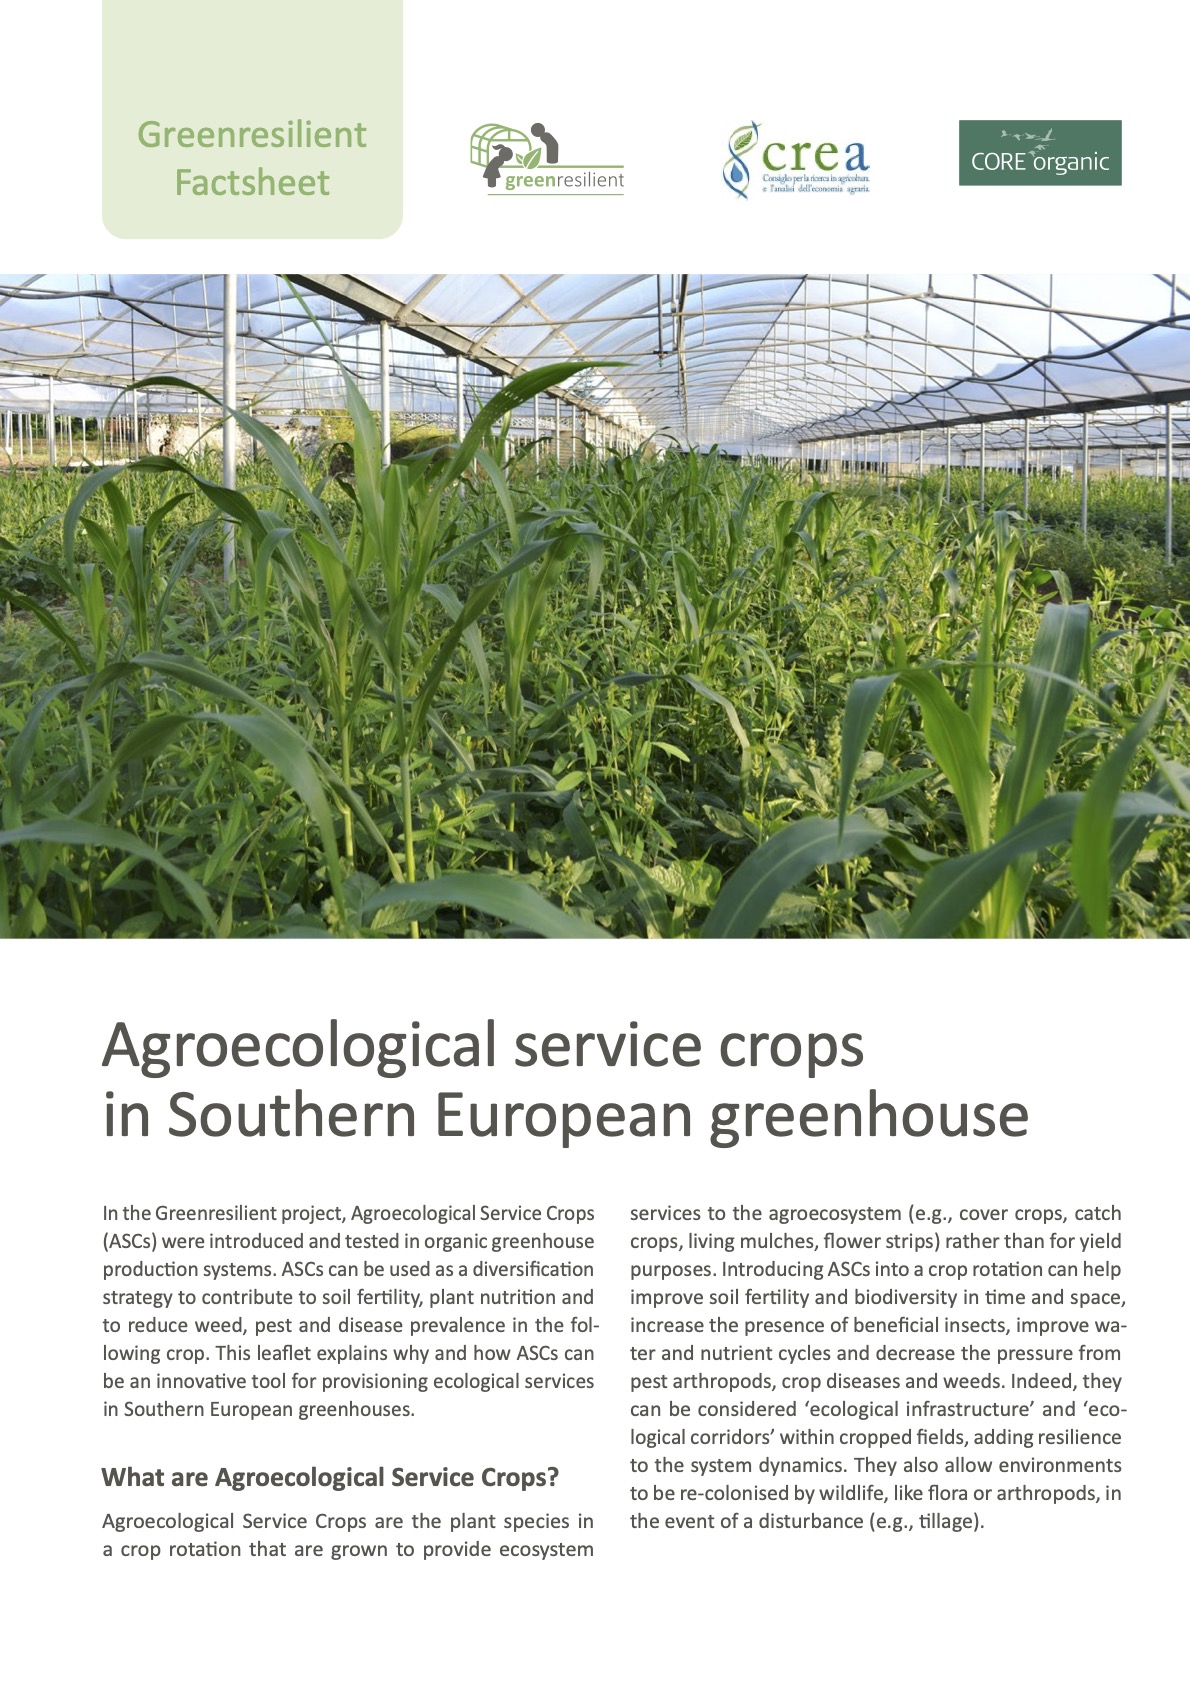 Cultivos de servicios agroecológicos en invernaderos del sur de Europa (Ficha informativa Greenresilient)